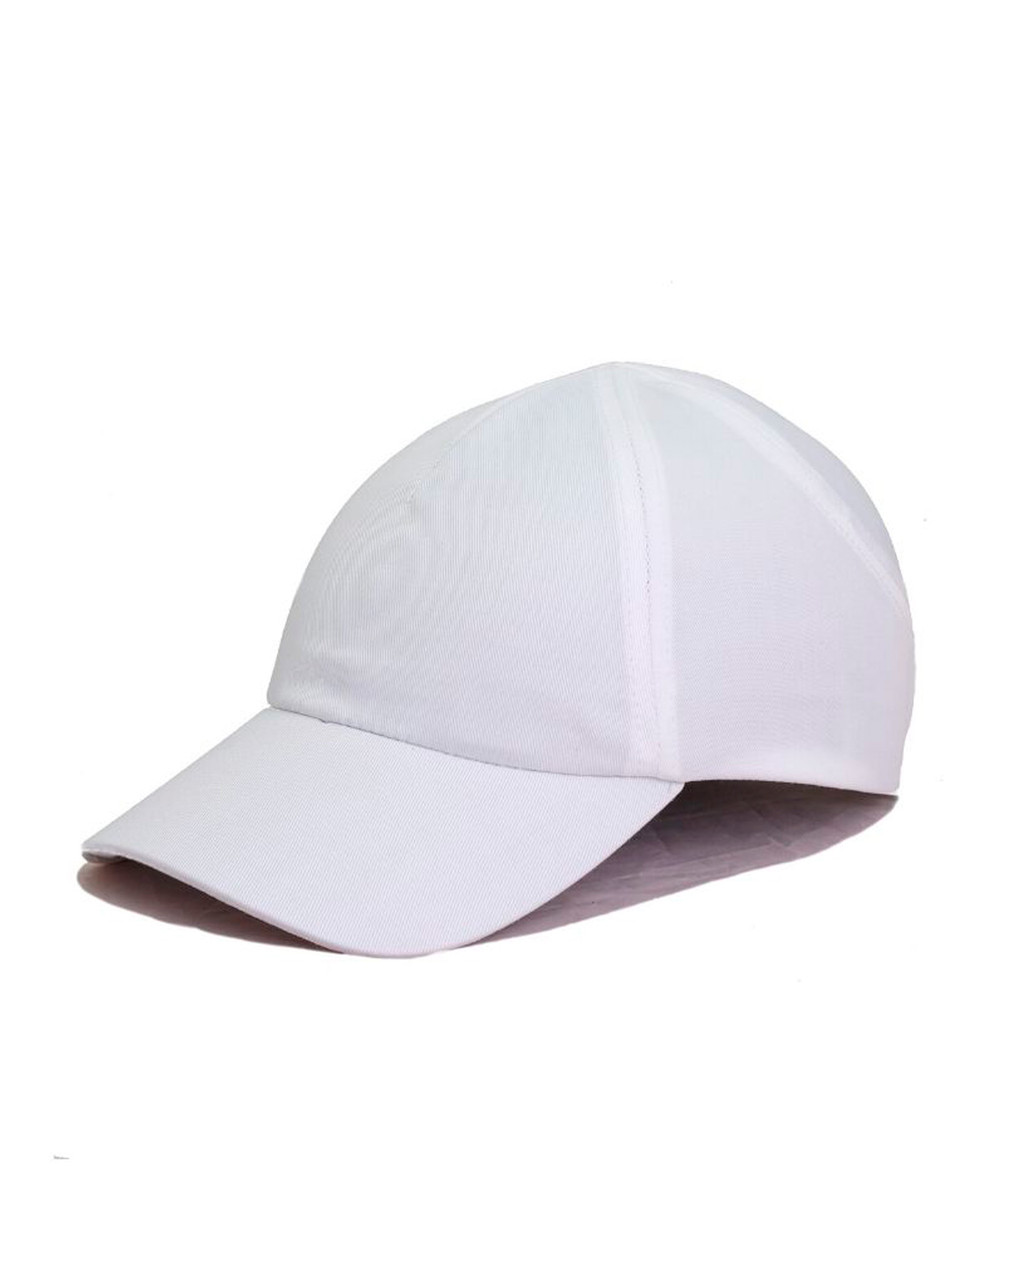 Каскетка РОСОМЗ RZ FavoriT CAP белая, 95517 (х10)